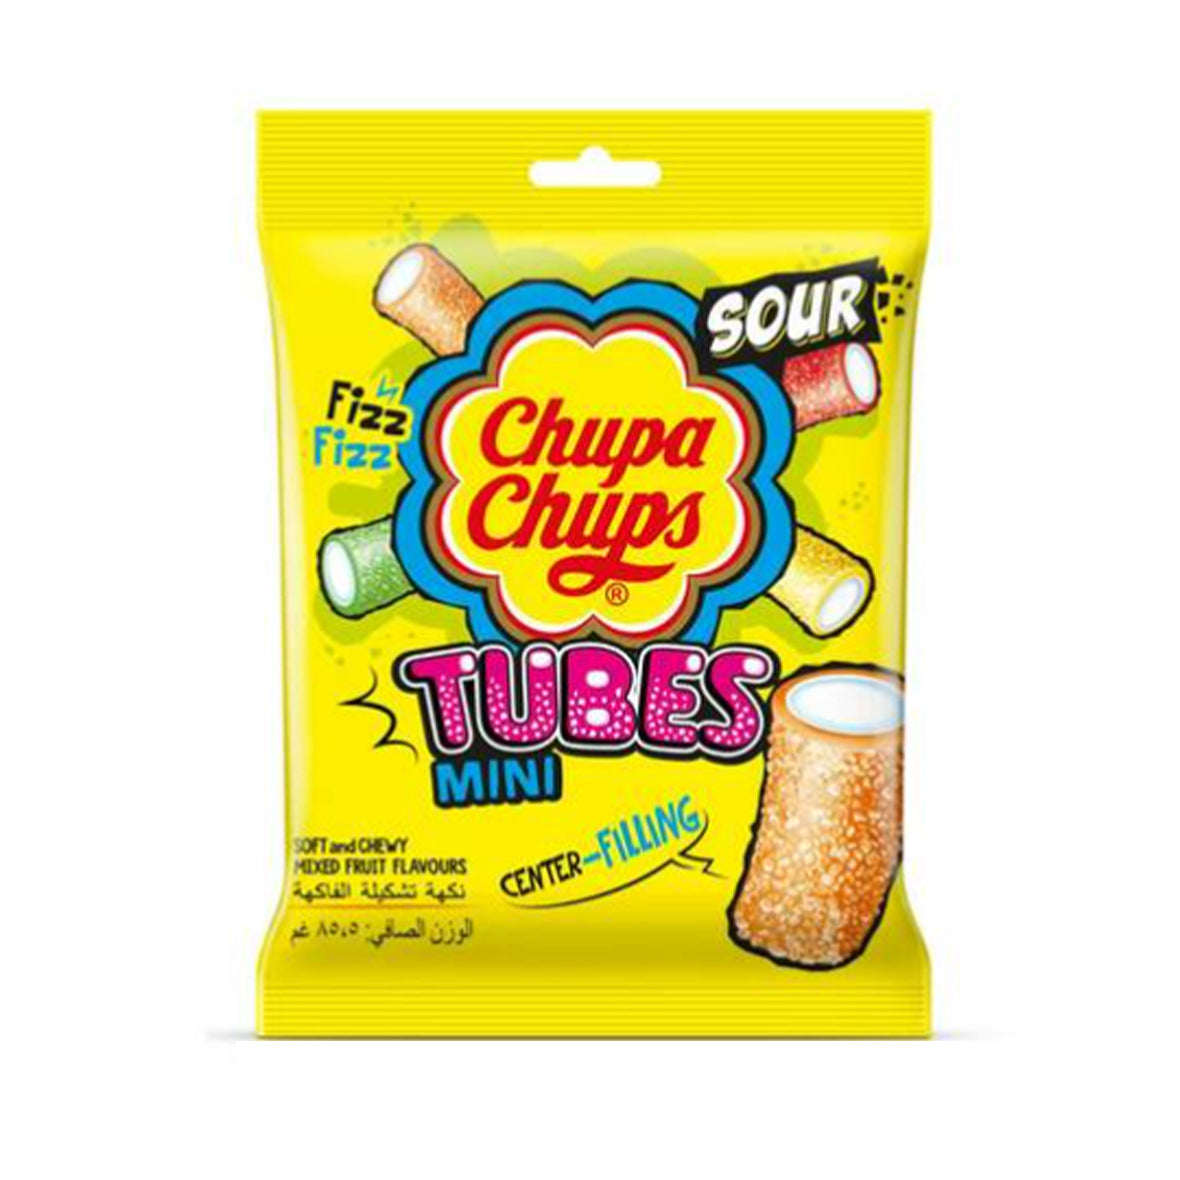 Chupa Chups Jellies Mini Tubes 85.5g